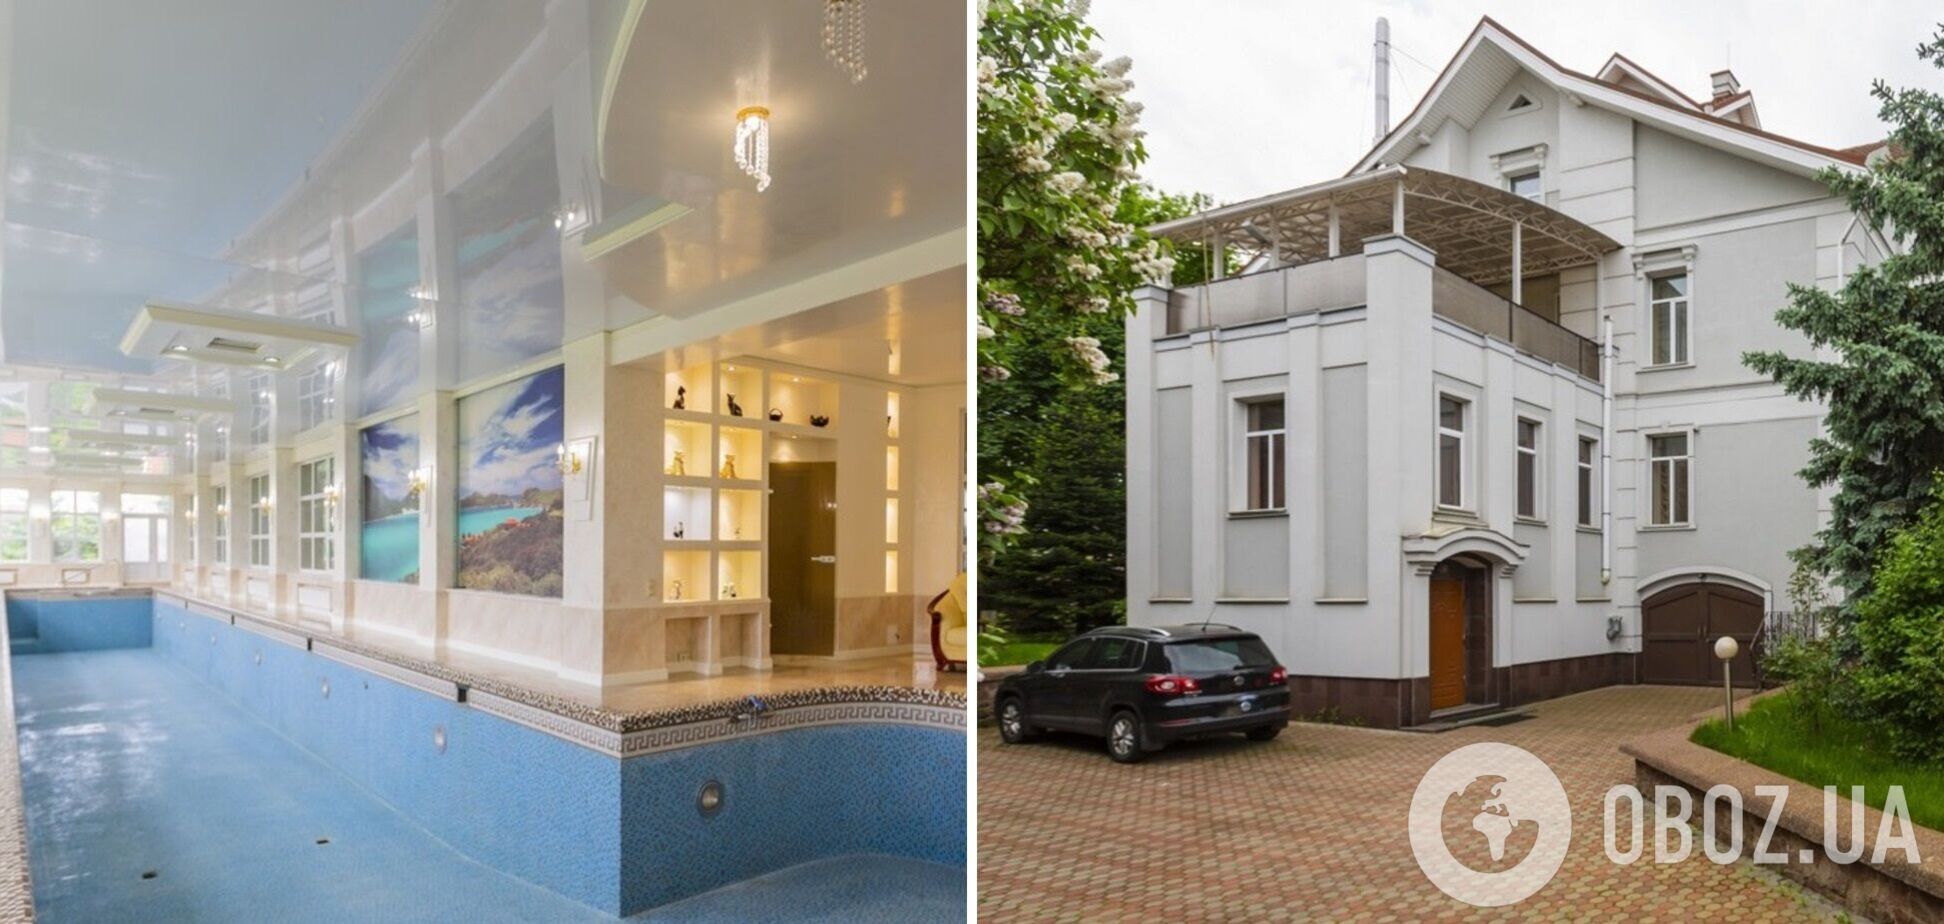 Під Києвом продають будинок за 30 млн грн із 'прибудовою' для обслуги